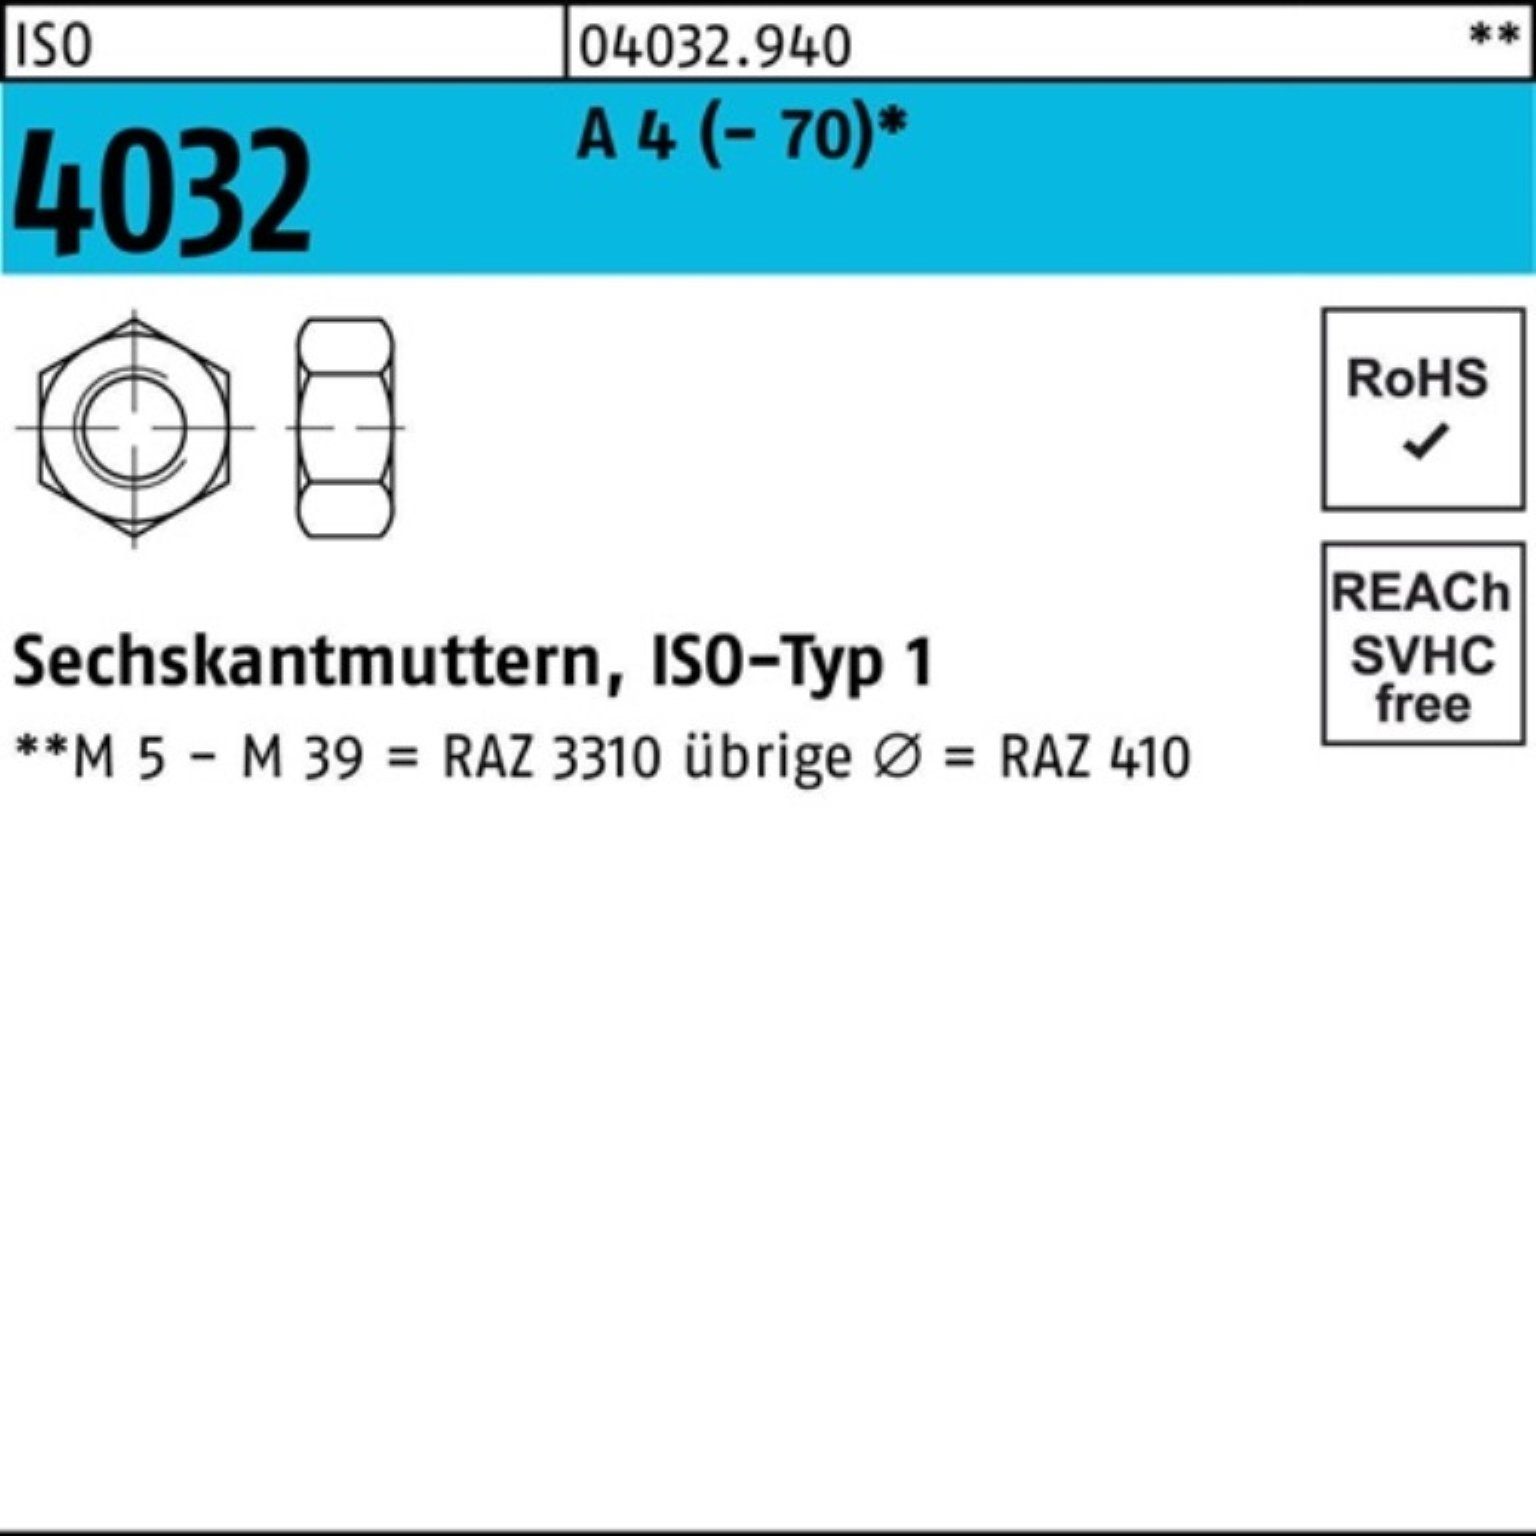 ISO Muttern Bufab 4 100er 100 4032 A 7 4032 Sechskantmutter ISO Pack - Stück M4 A 4